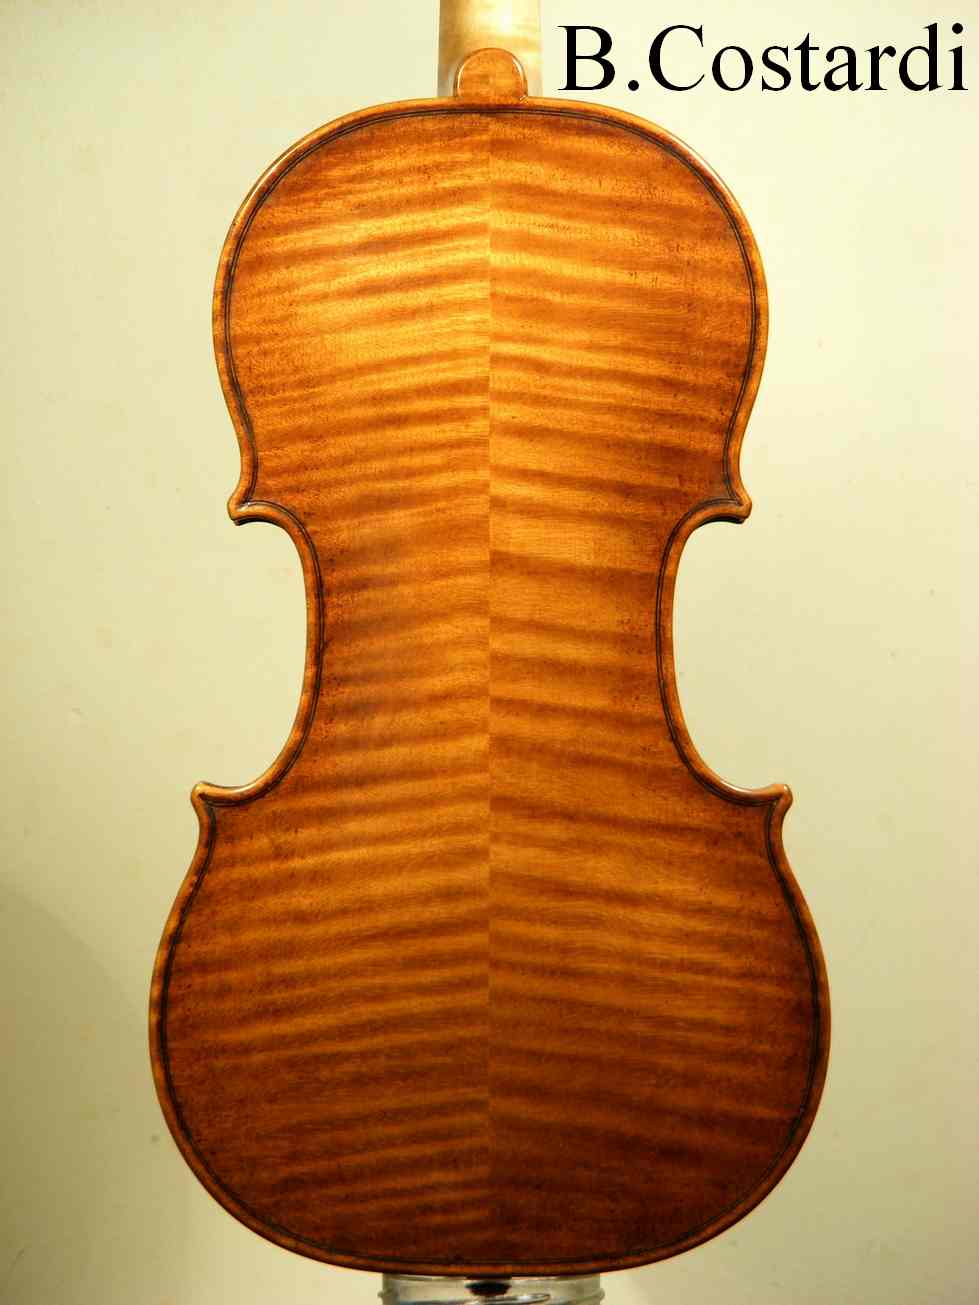 violino modello antonio stradivari 1715